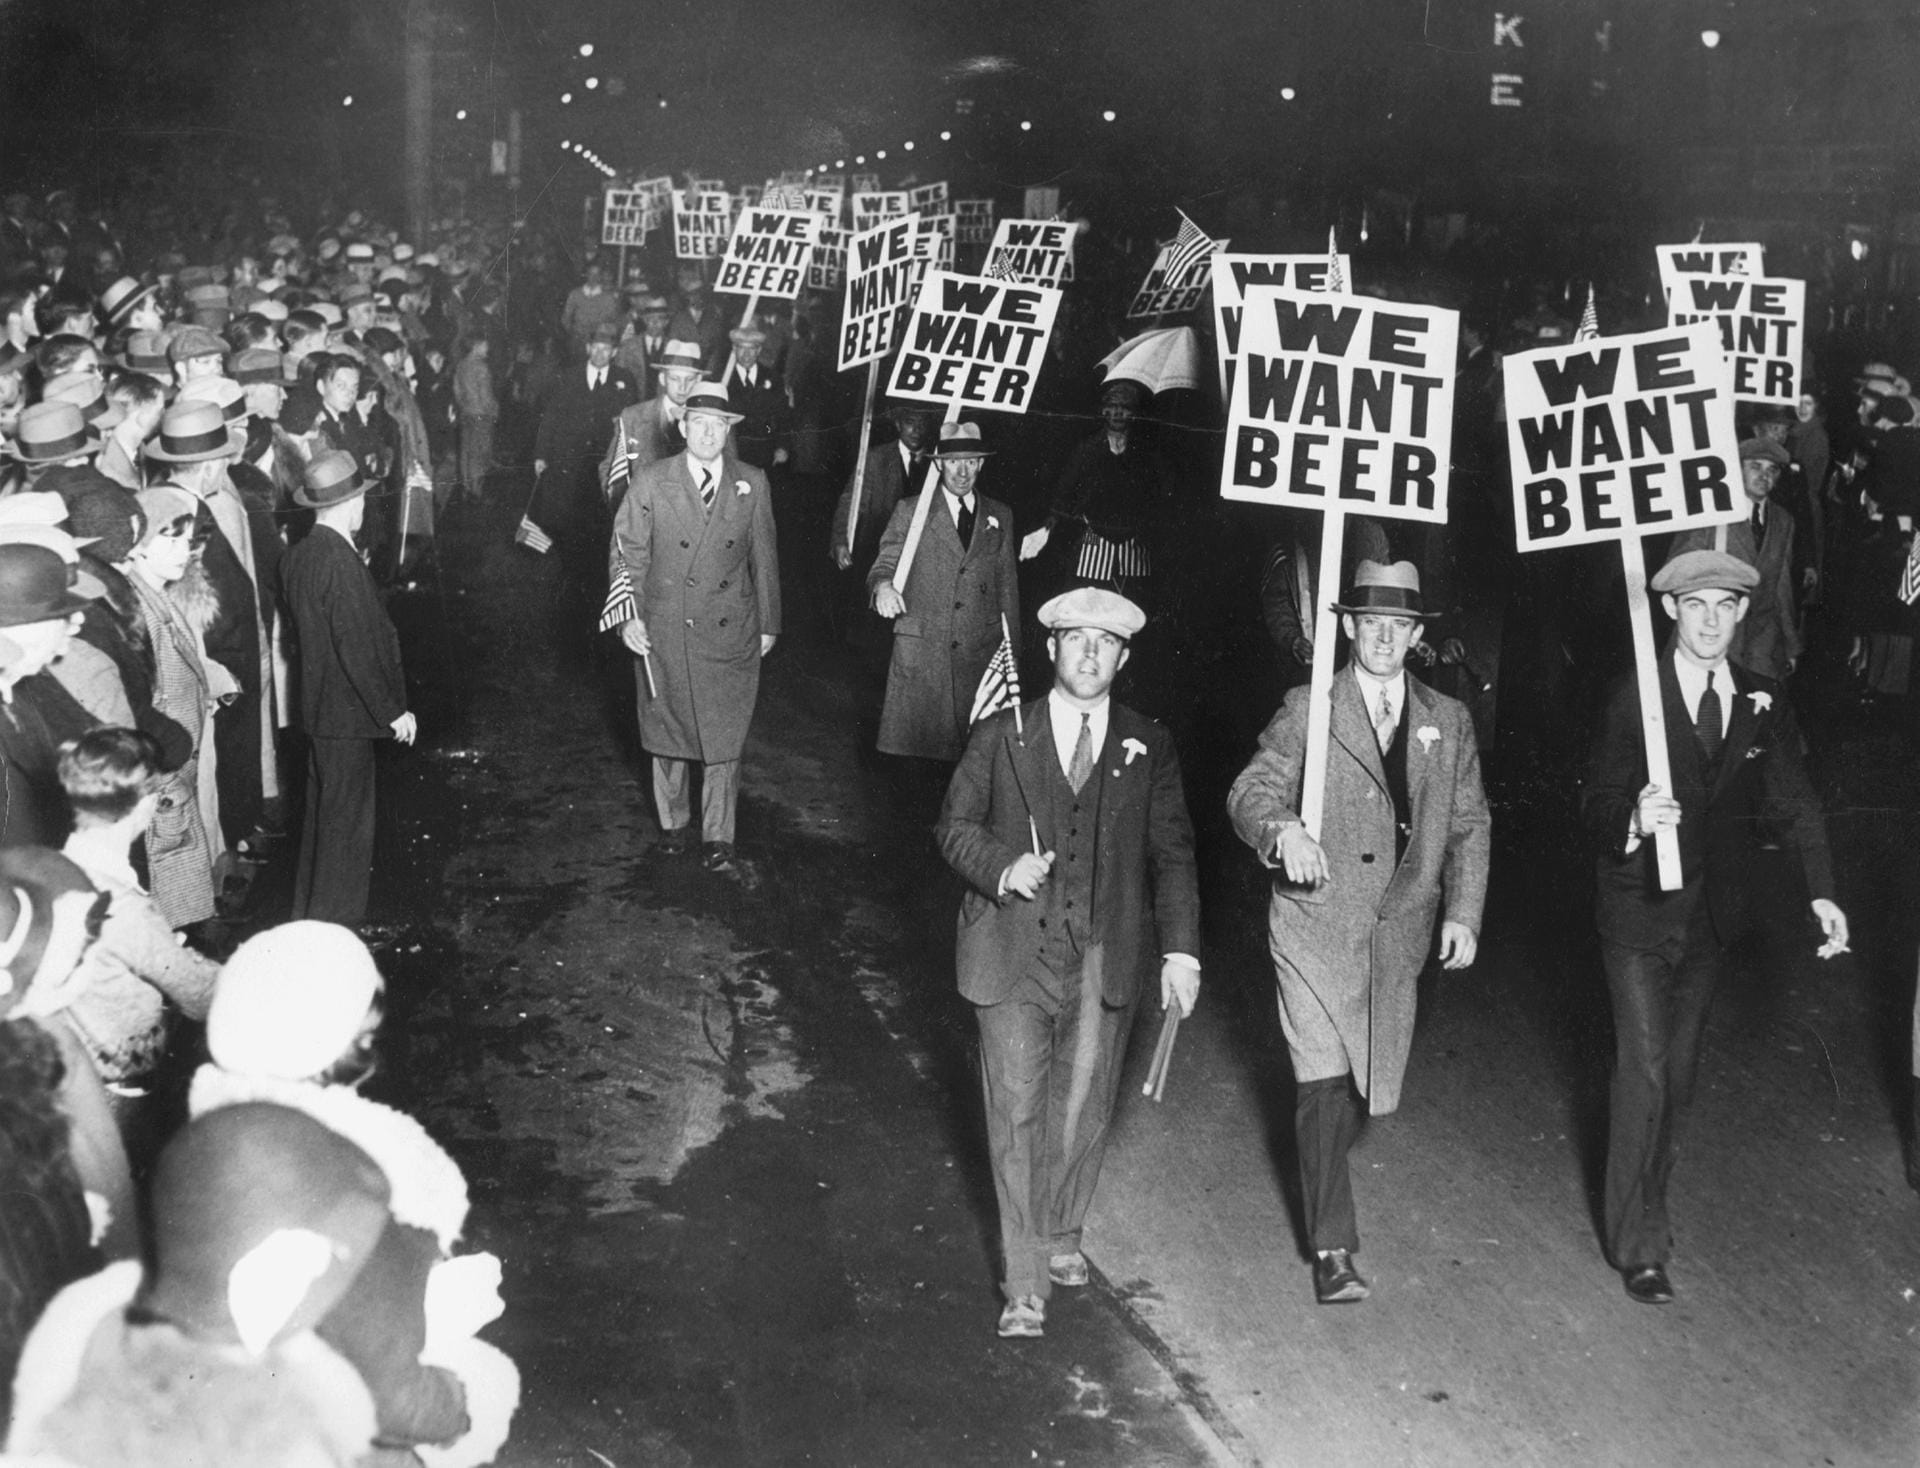 Im Laufe der Jahre wurde die Prohibition immer umstrittener. Vor allem angesichts ihre offensichtlichen Versagens. "Wir wollen Bier", forderten diese Gewerkschafter bei einer Demonstration 1931 in New Jersey. Zwei Jahre später endete das Alkoholverbot dann tatsächlich.